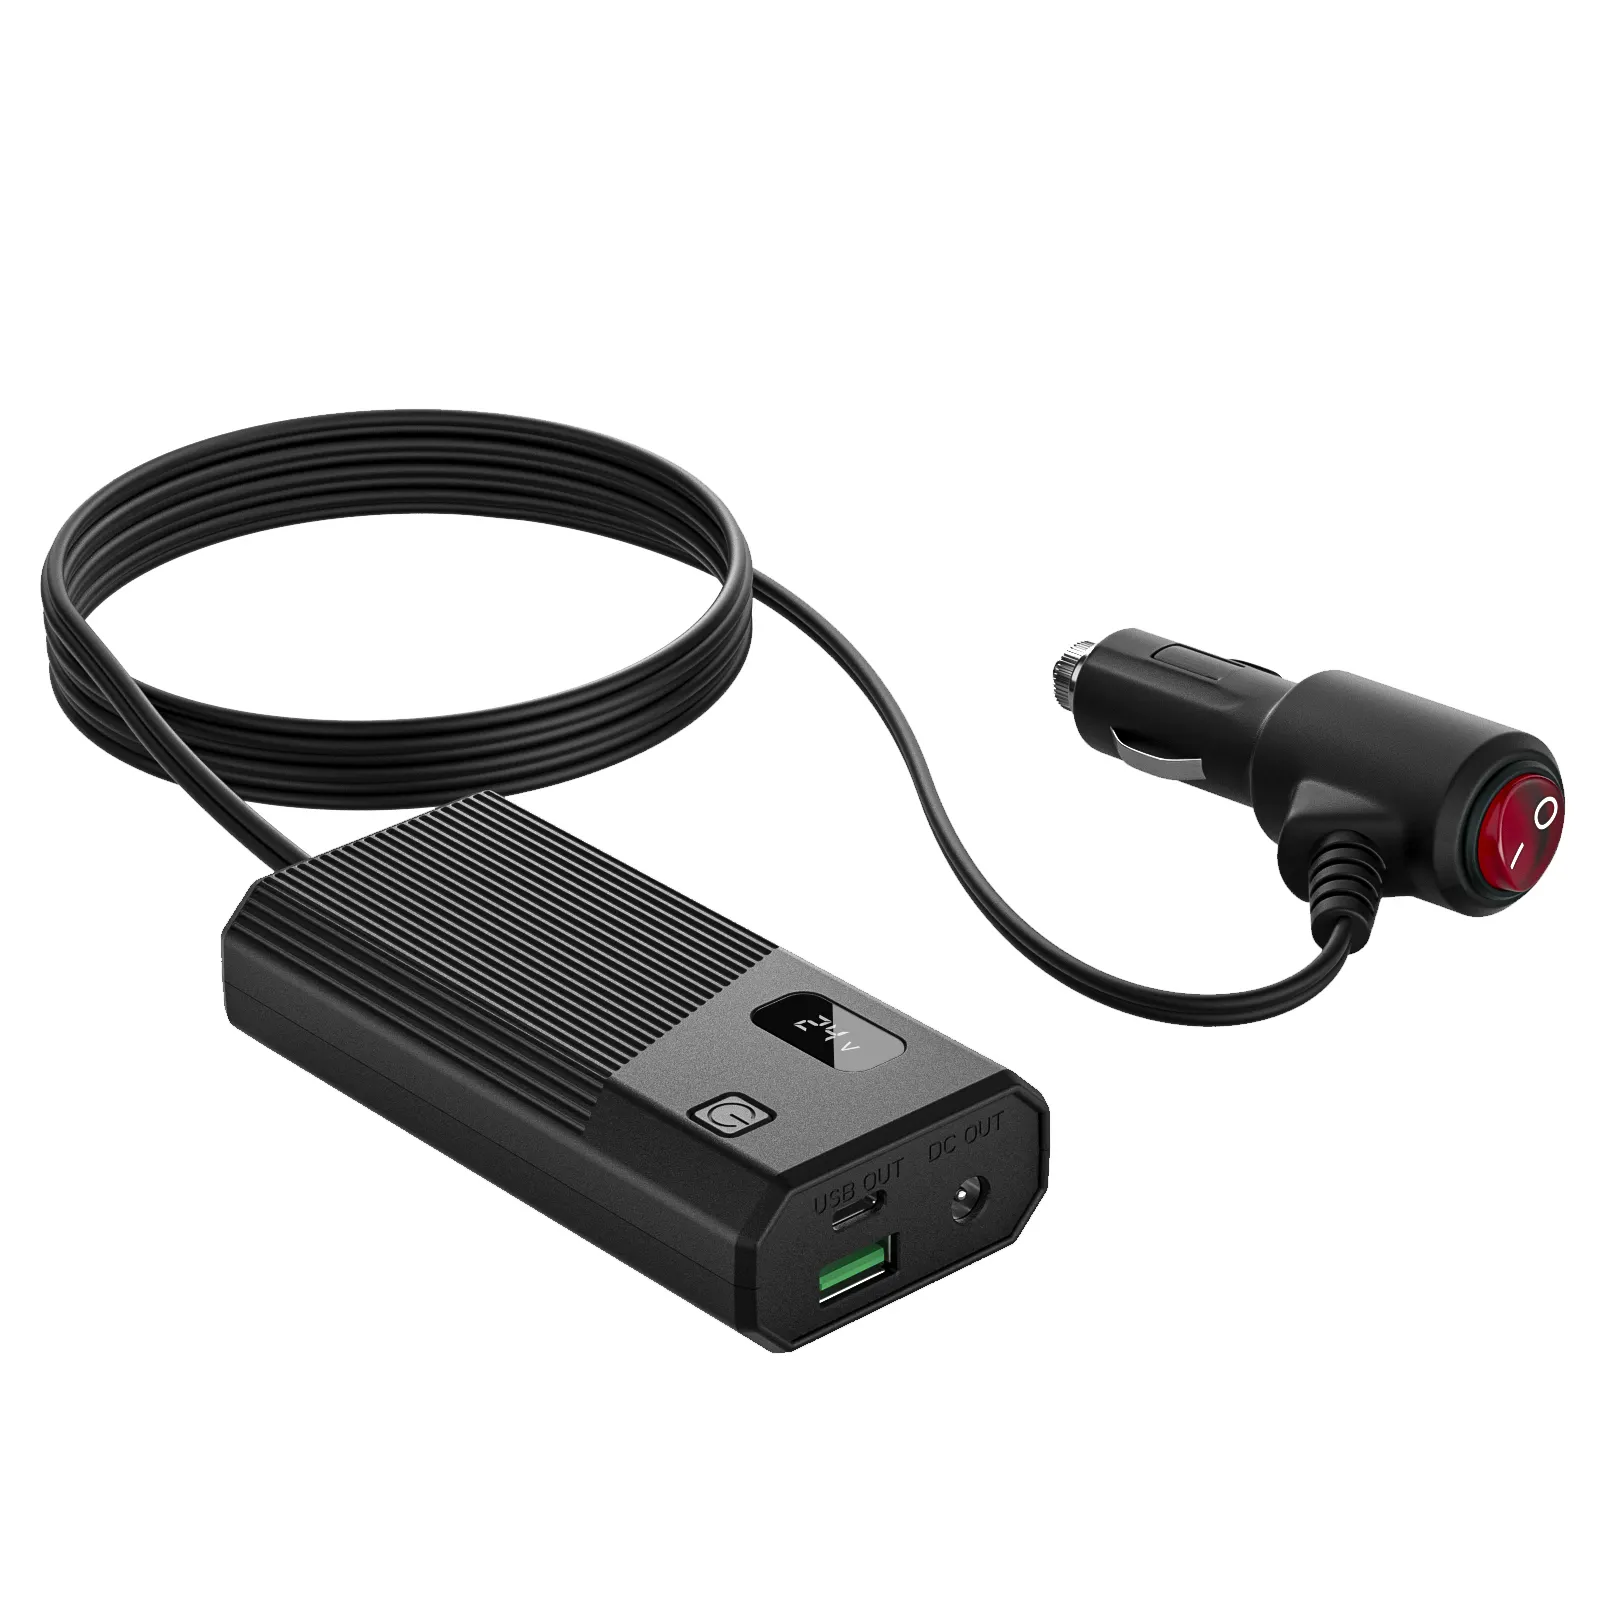 Chargeur de voiture CPAP 12V-24V adaptateur de chargeur de voiture multifonction à tension réglable avec sortie USB-C/USB-A pour iPhone, i